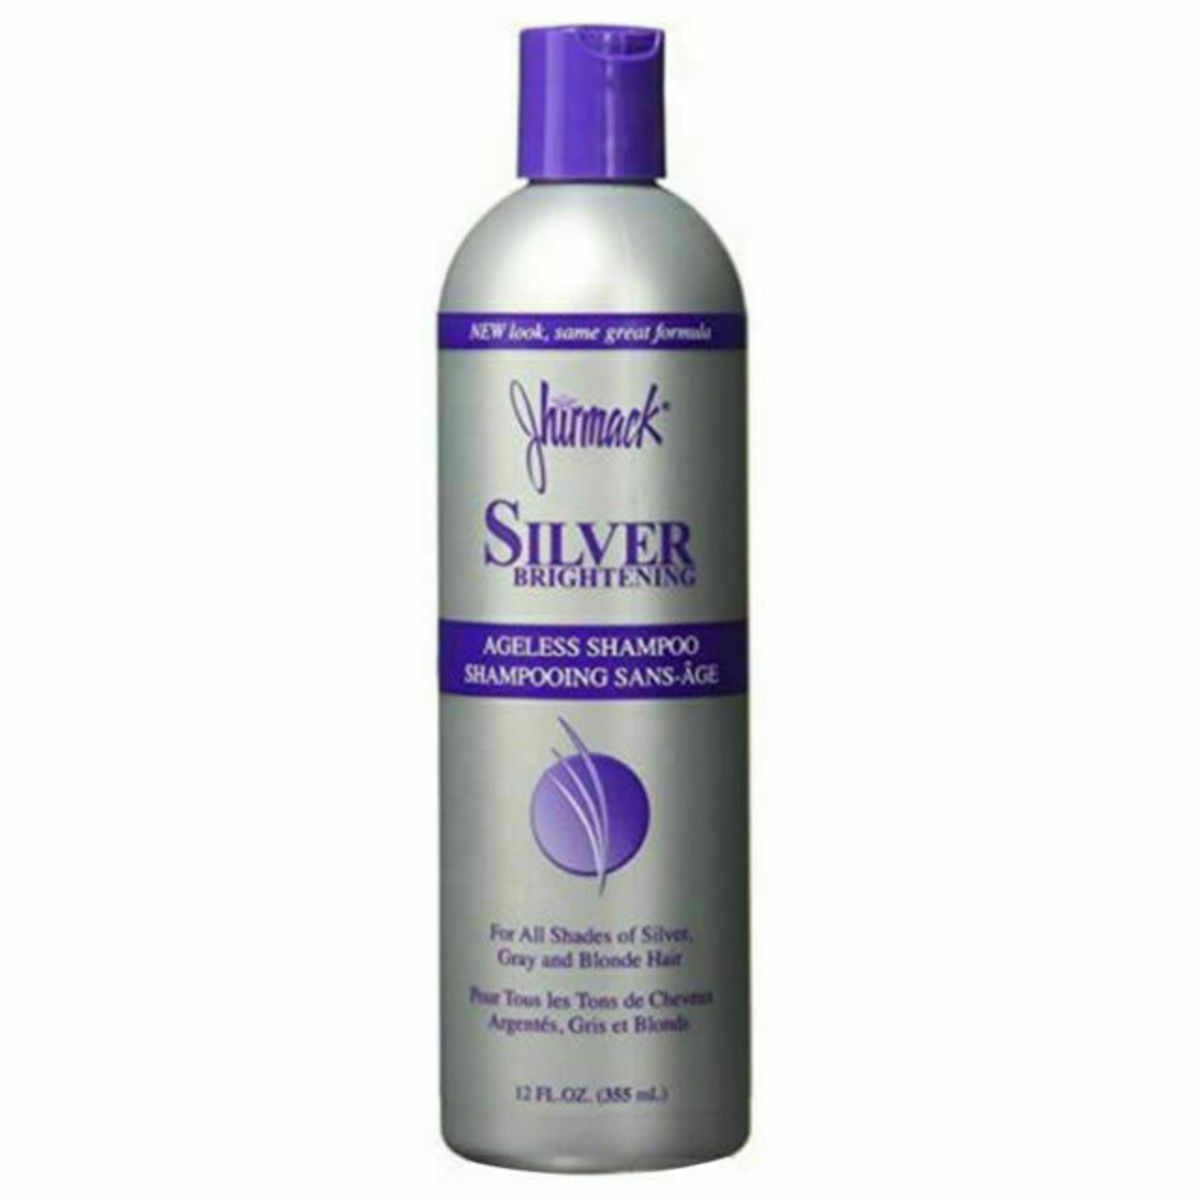 Jhirmack Silver Brightening shampoo